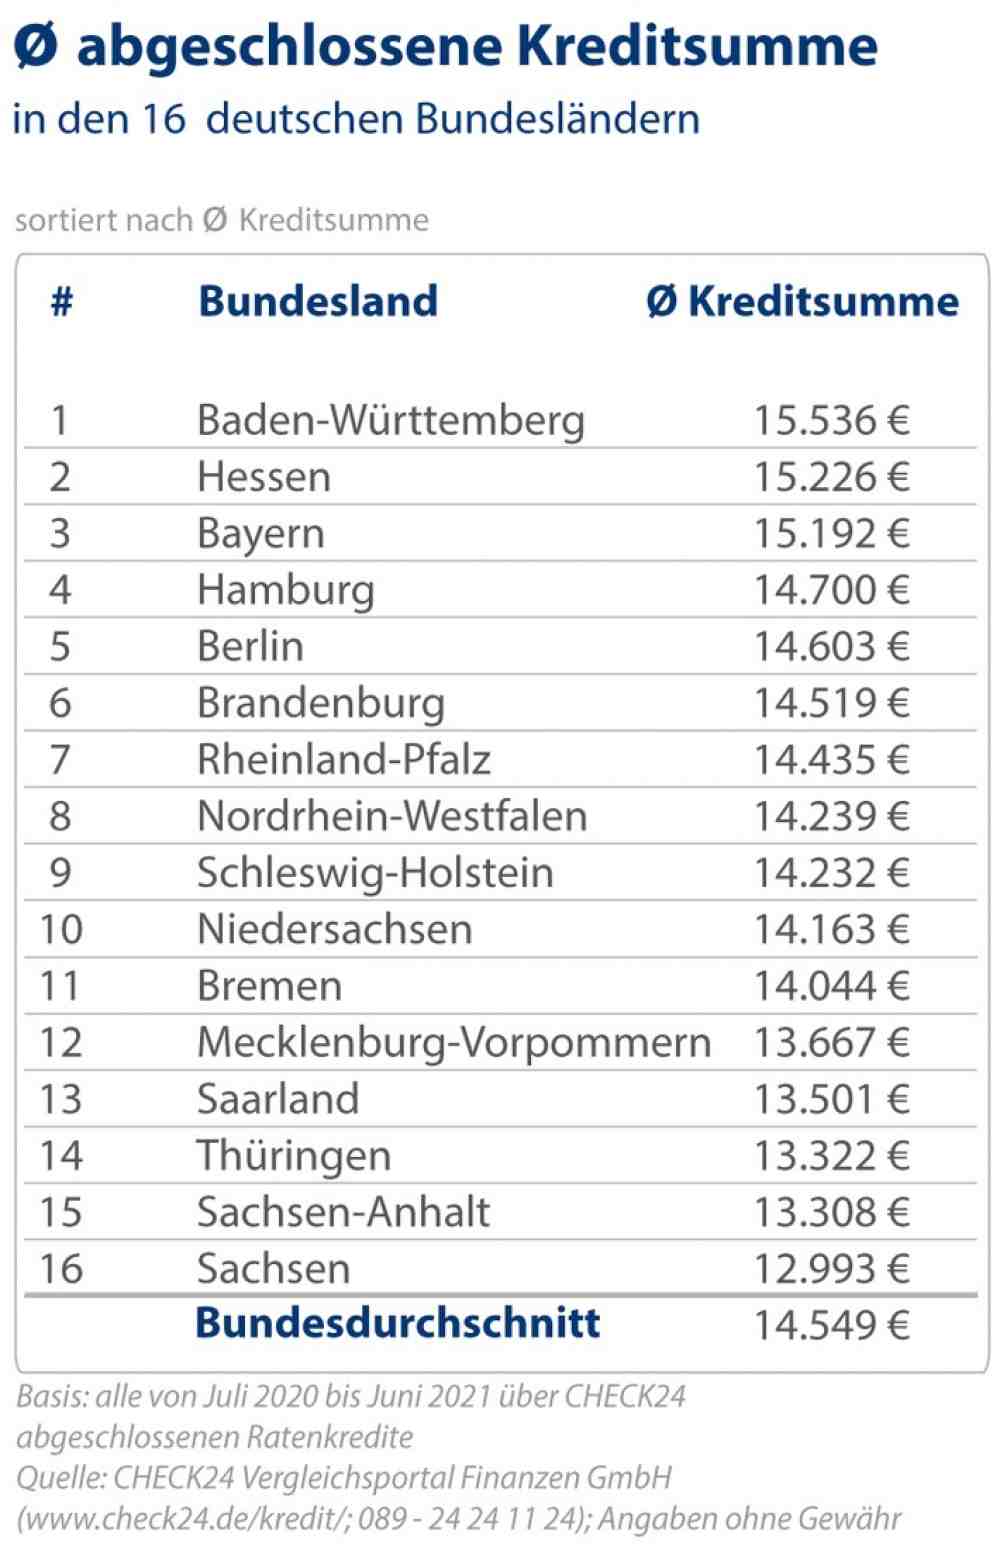 Kredite in Ostdeutschland 900 Euro niedriger als in Westdeutschland